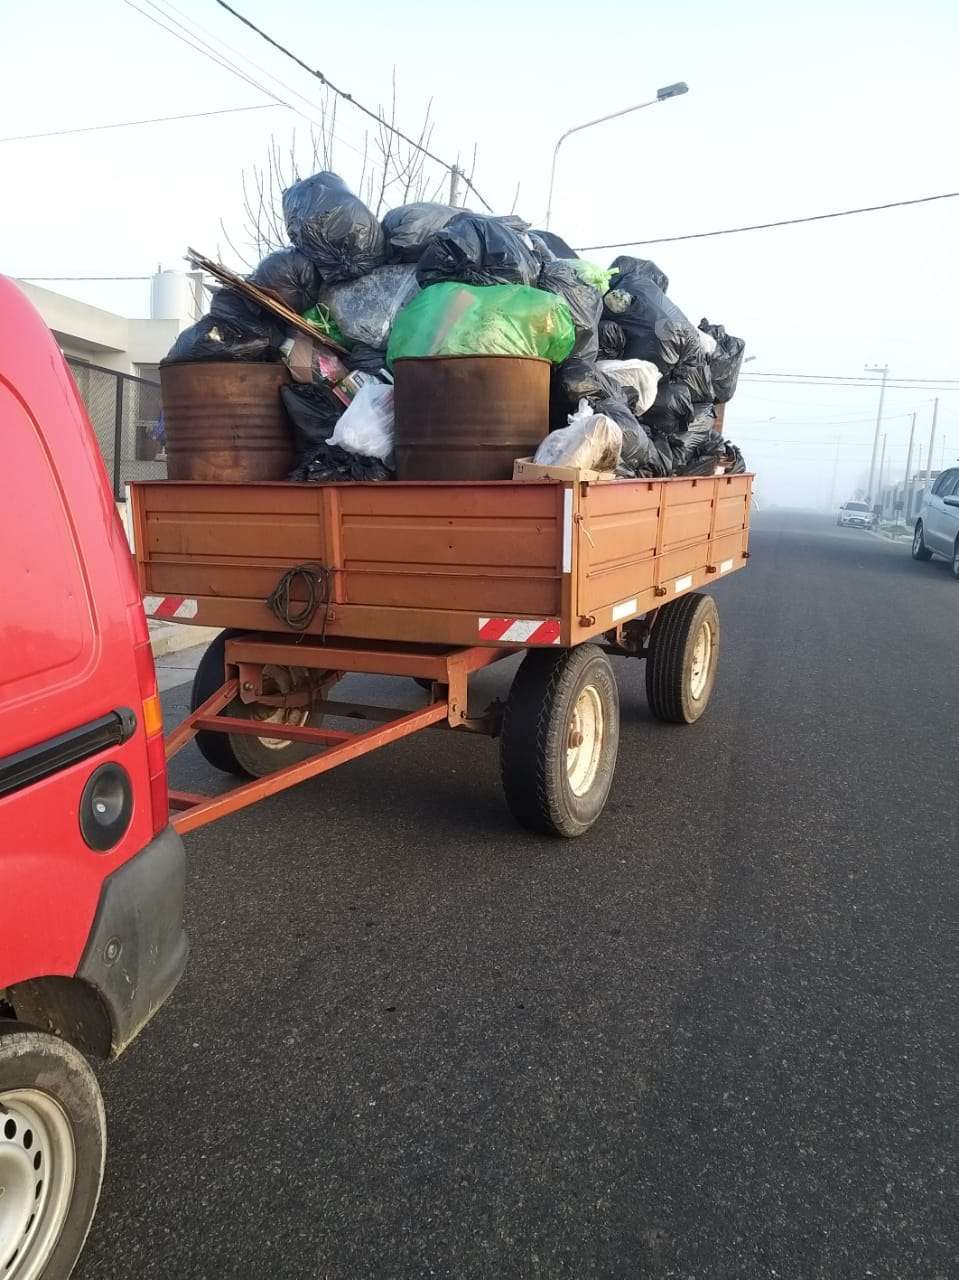 Conflicto en recolección: un vecino de Procrear recogió todos los residuos